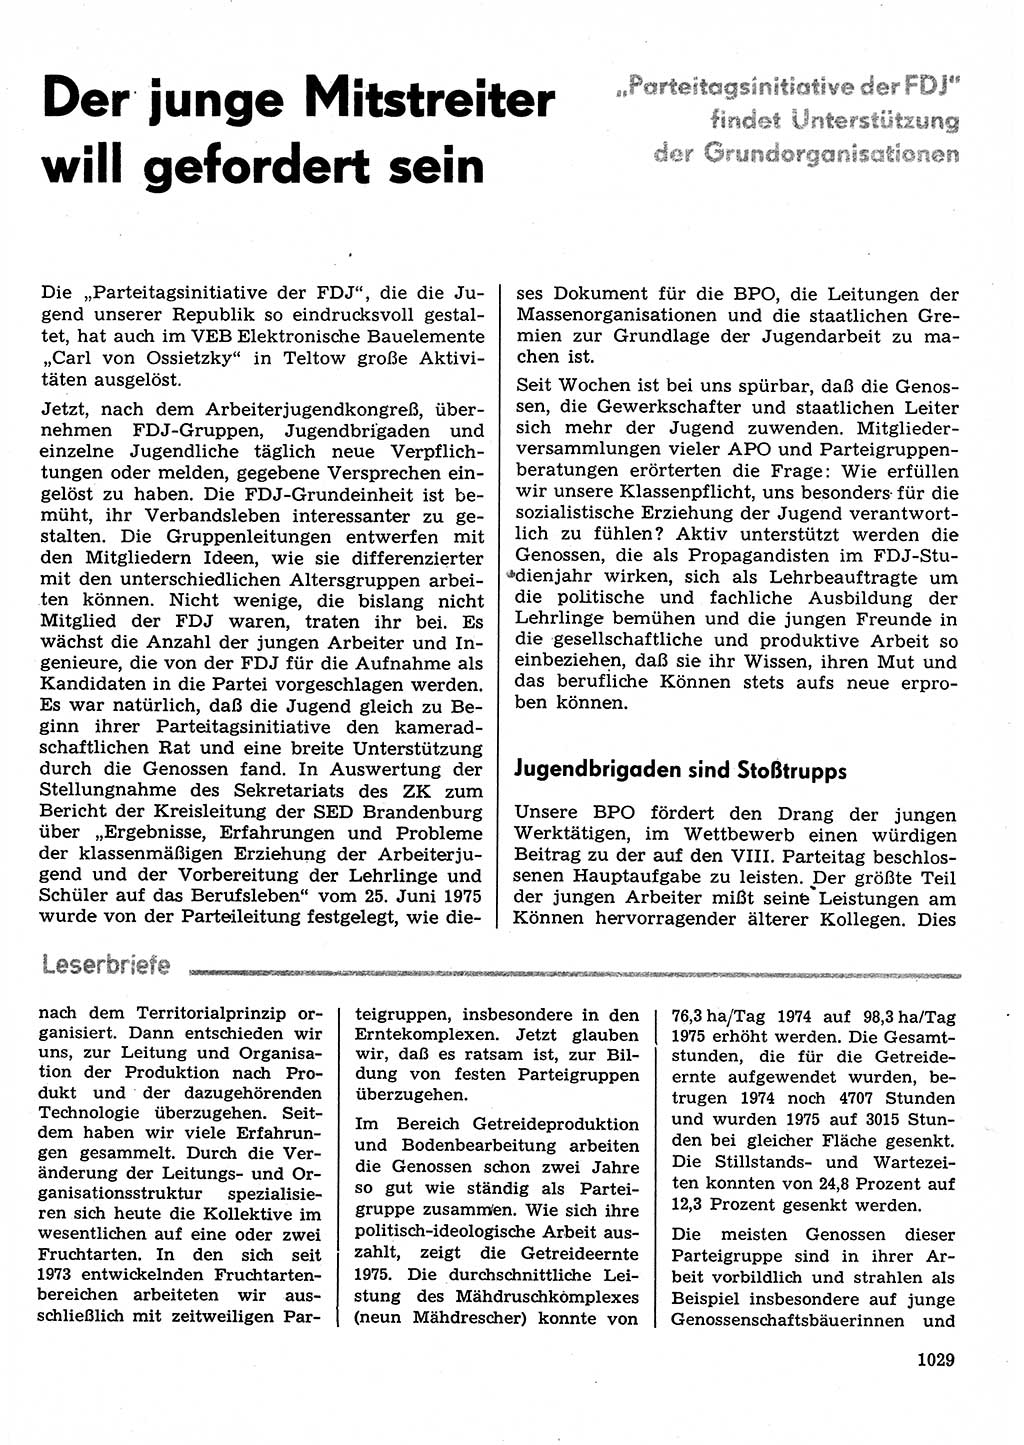 Neuer Weg (NW), Organ des Zentralkomitees (ZK) der SED (Sozialistische Einheitspartei Deutschlands) für Fragen des Parteilebens, 30. Jahrgang [Deutsche Demokratische Republik (DDR)] 1975, Seite 1029 (NW ZK SED DDR 1975, S. 1029)